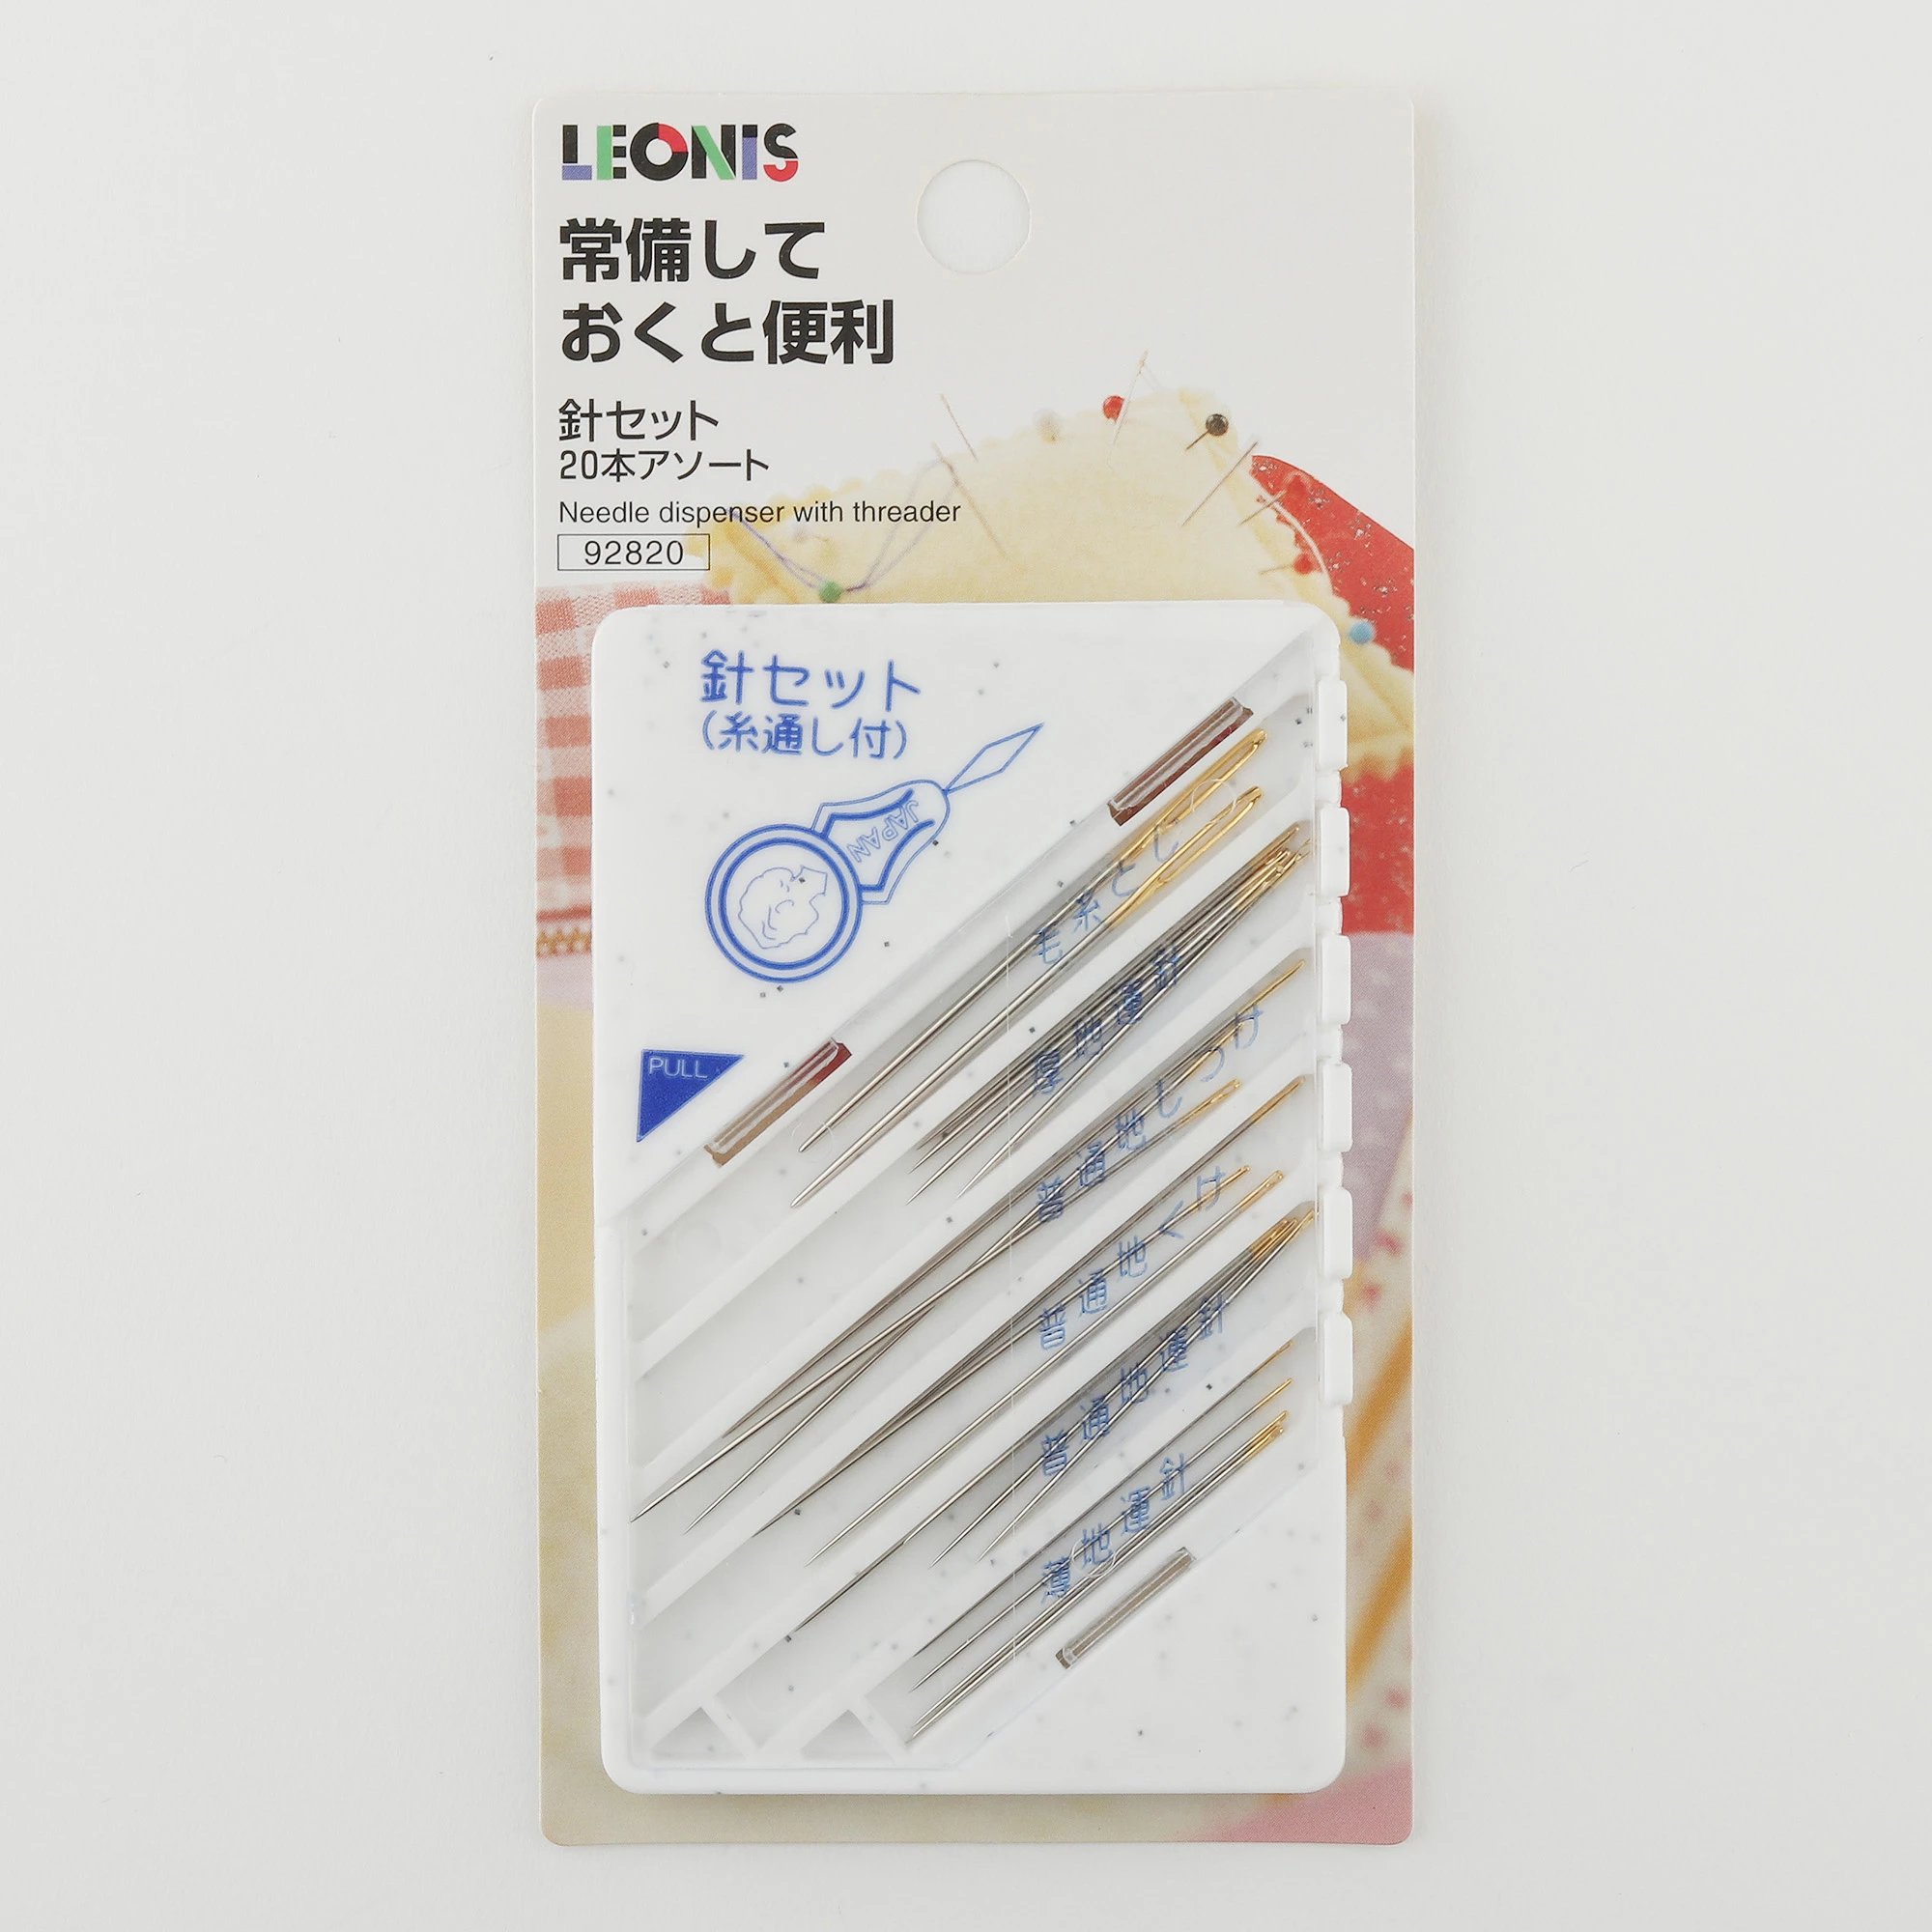 日本进口LEONIS手工缝纫针套装附穿针器家用针缝被子毛衣十字绣针